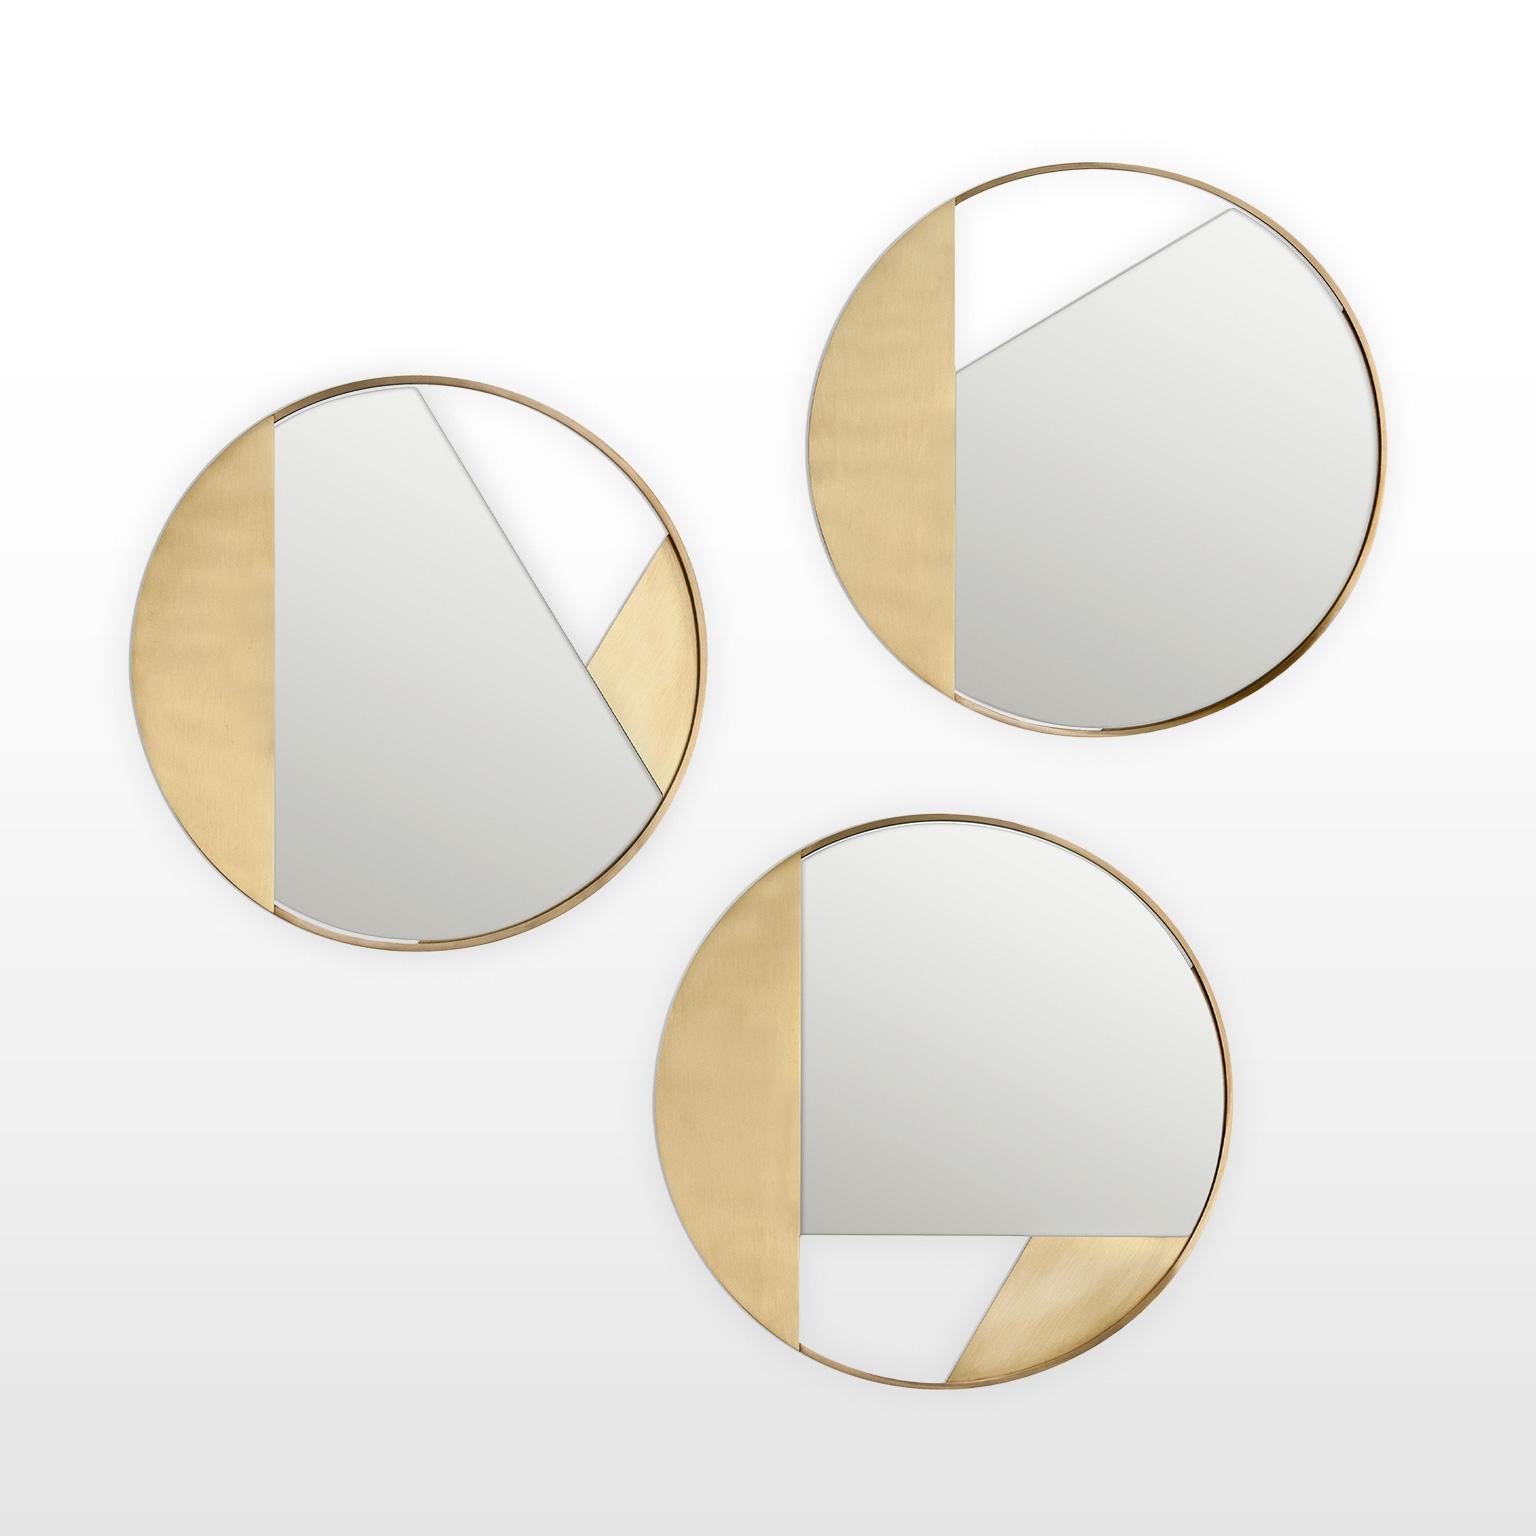 Contemporary Limited Edition Brass Mirror, Revolution 90 V3 by Edizione Limitata For Sale 4